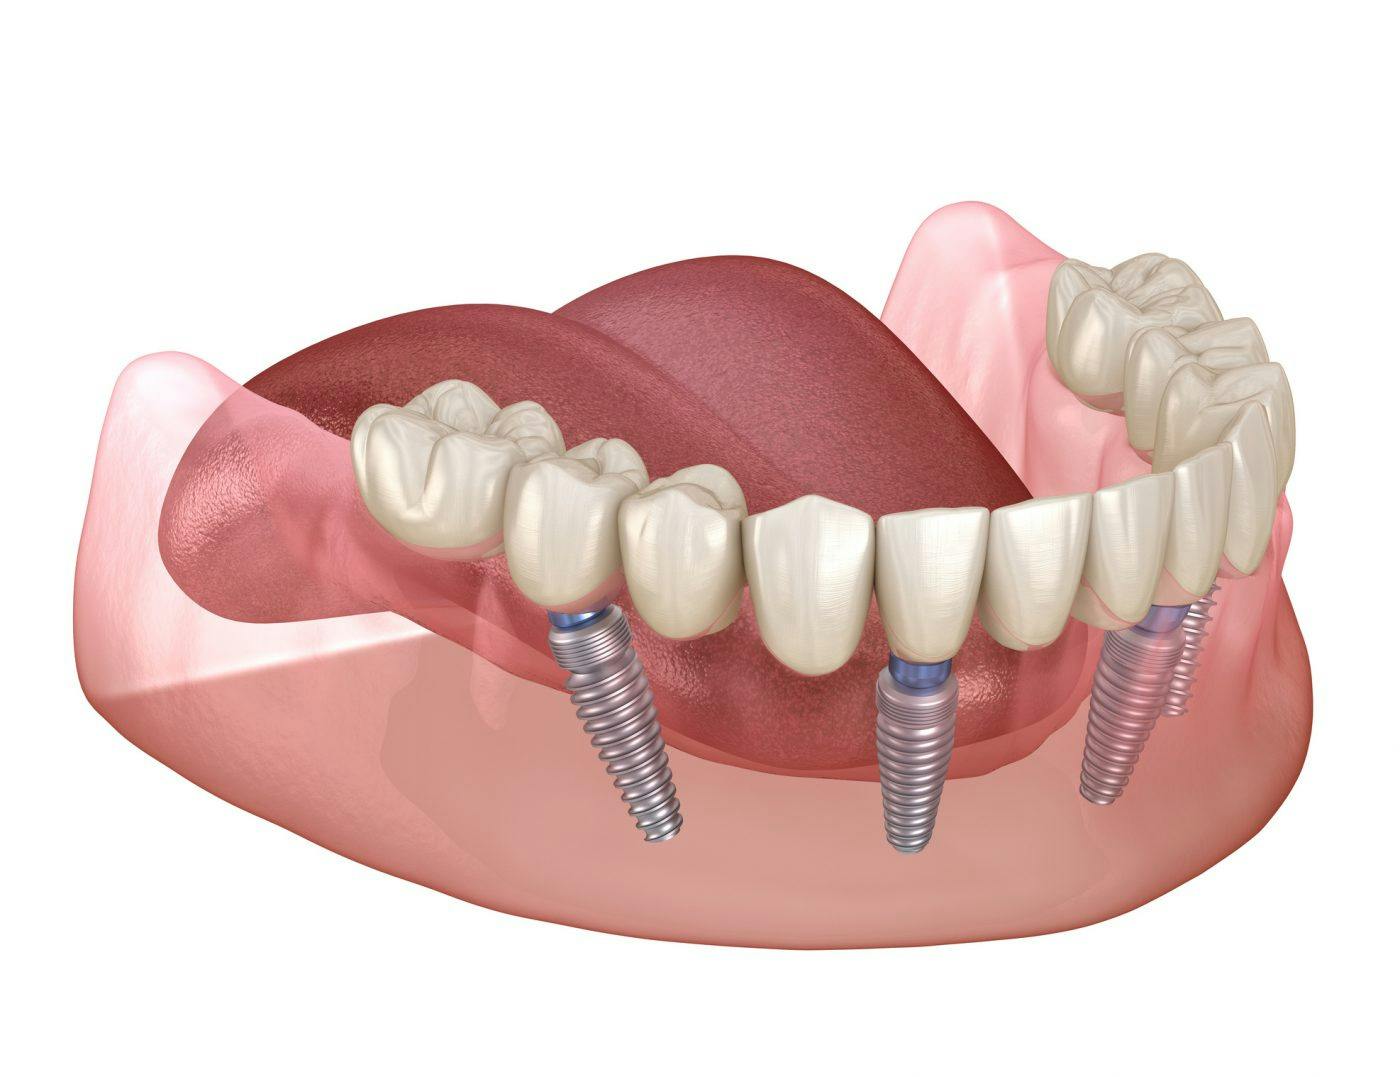 Dental Implants Solutions Missing Teeth 2